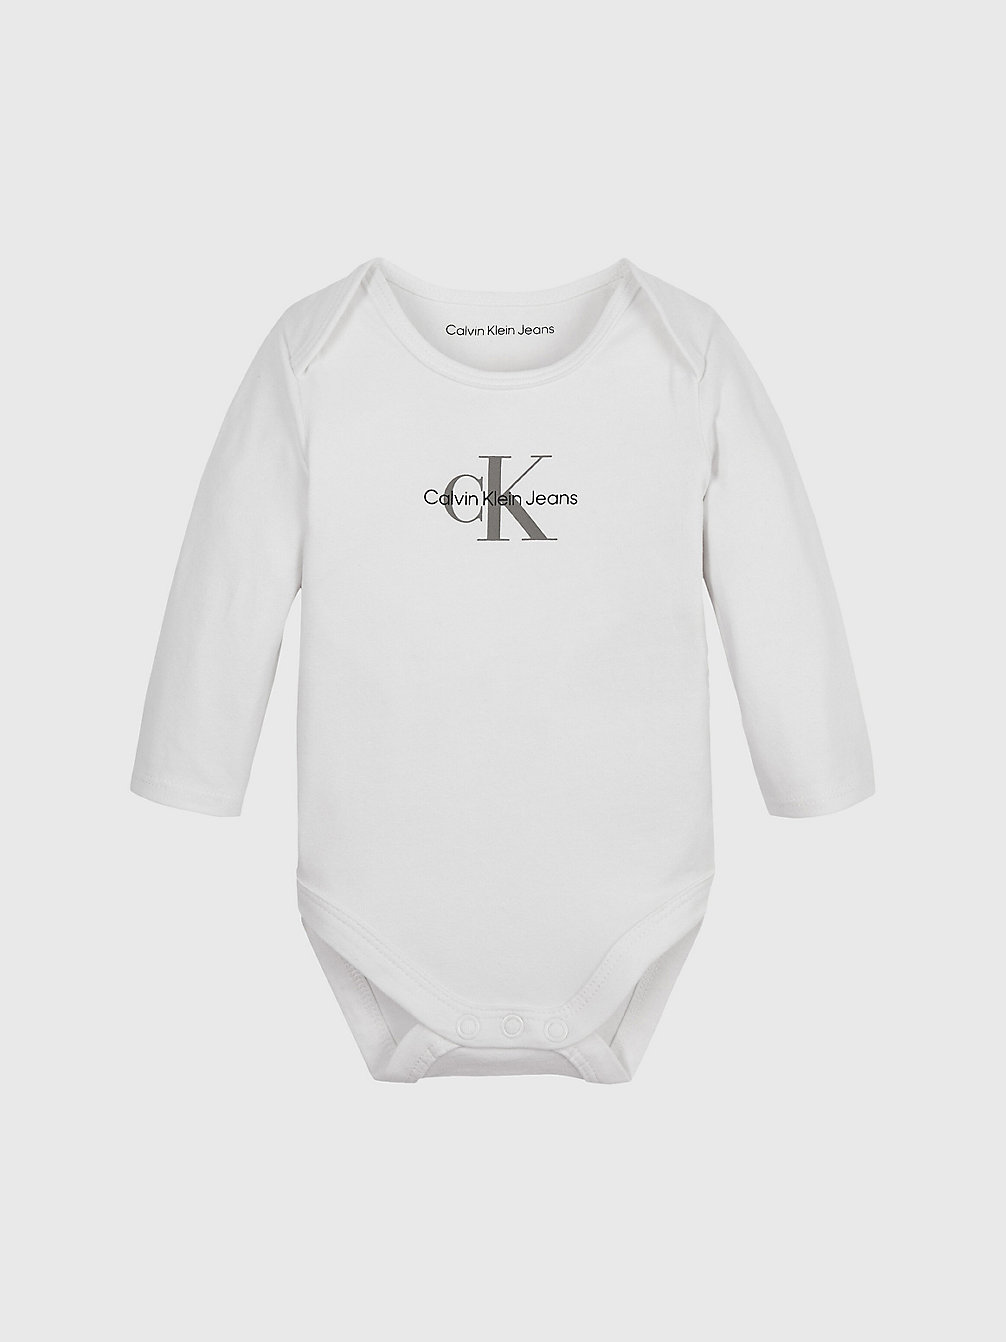 BRIGHT WHITE Newborn Logo Bodysuit undefined newborn Calvin Klein